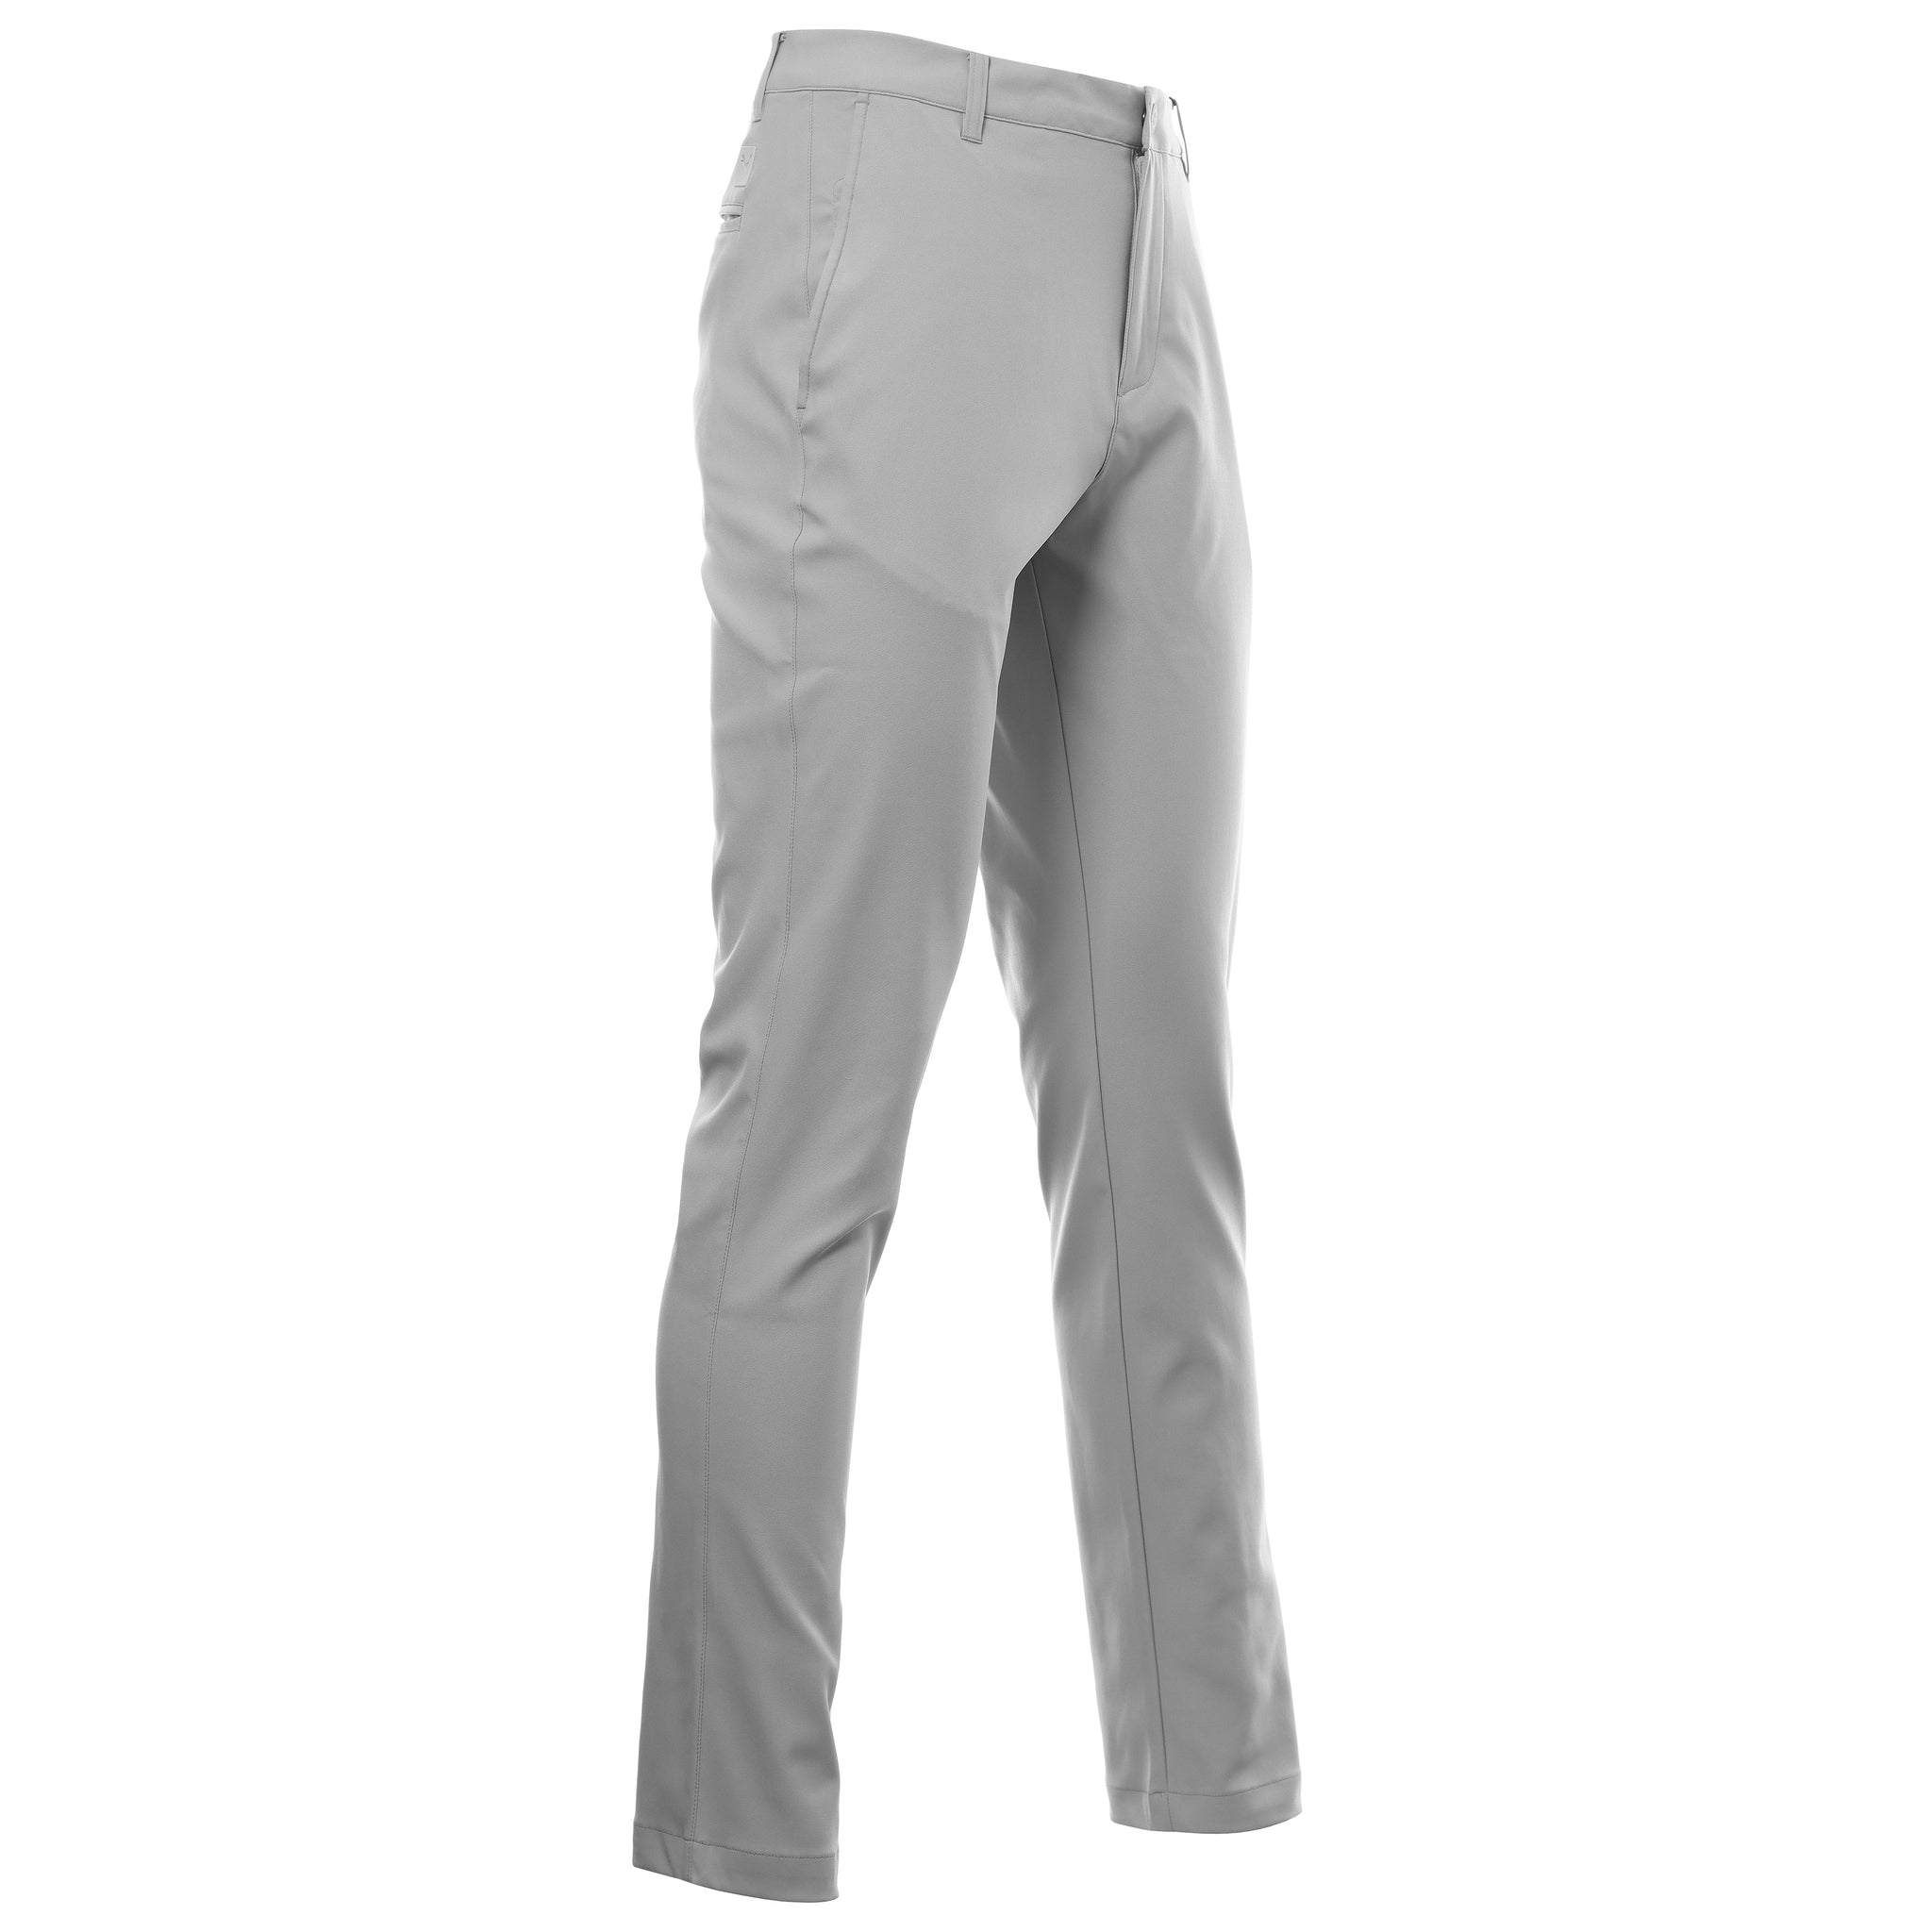 puma-golf-dealer-tailored-pant-535524-ash-grey-04